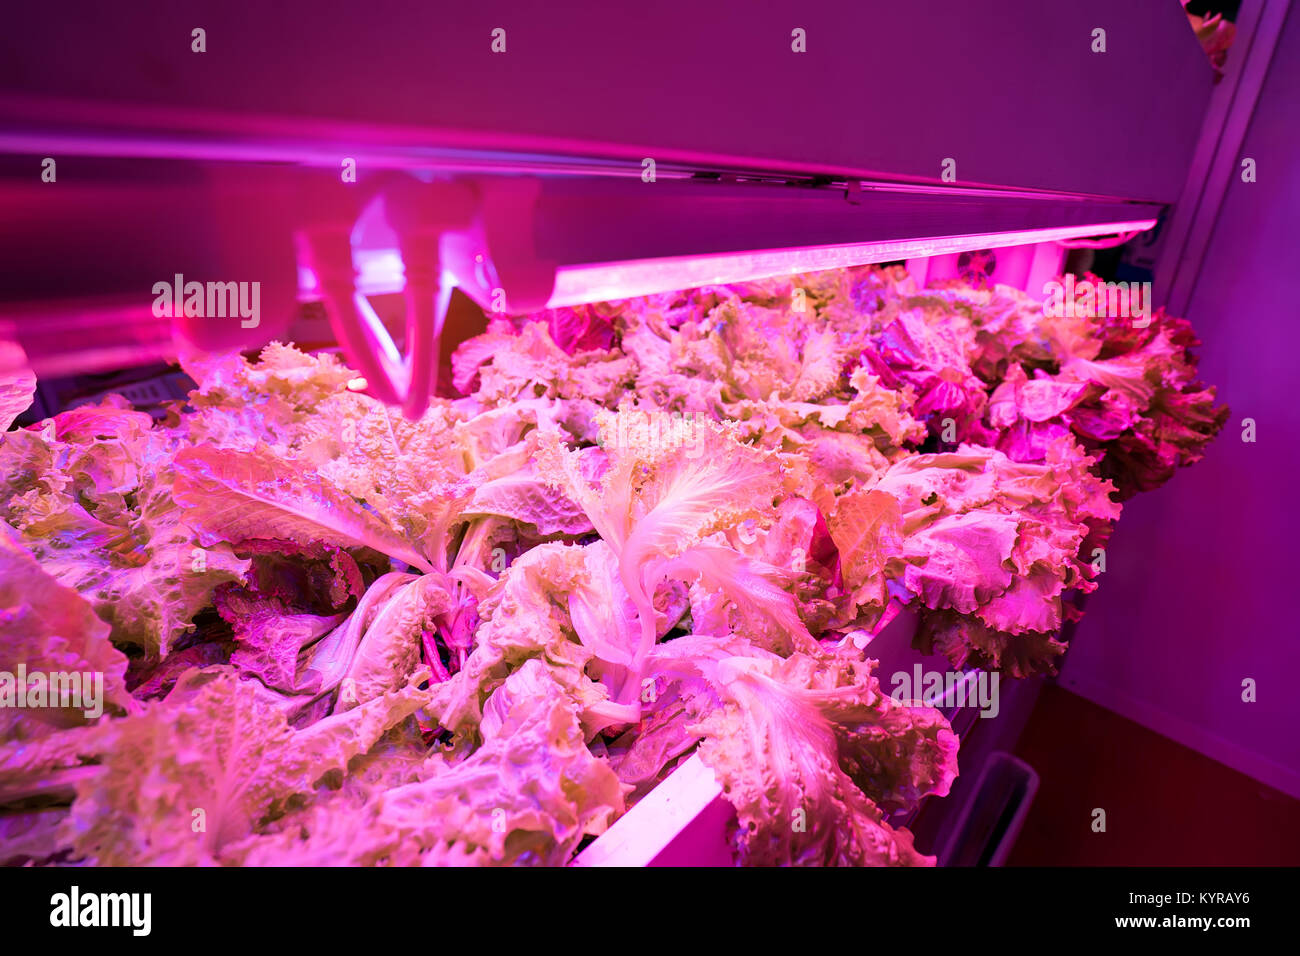 La culture hors-sol de légumes sous lumière artificielle Banque D'Images